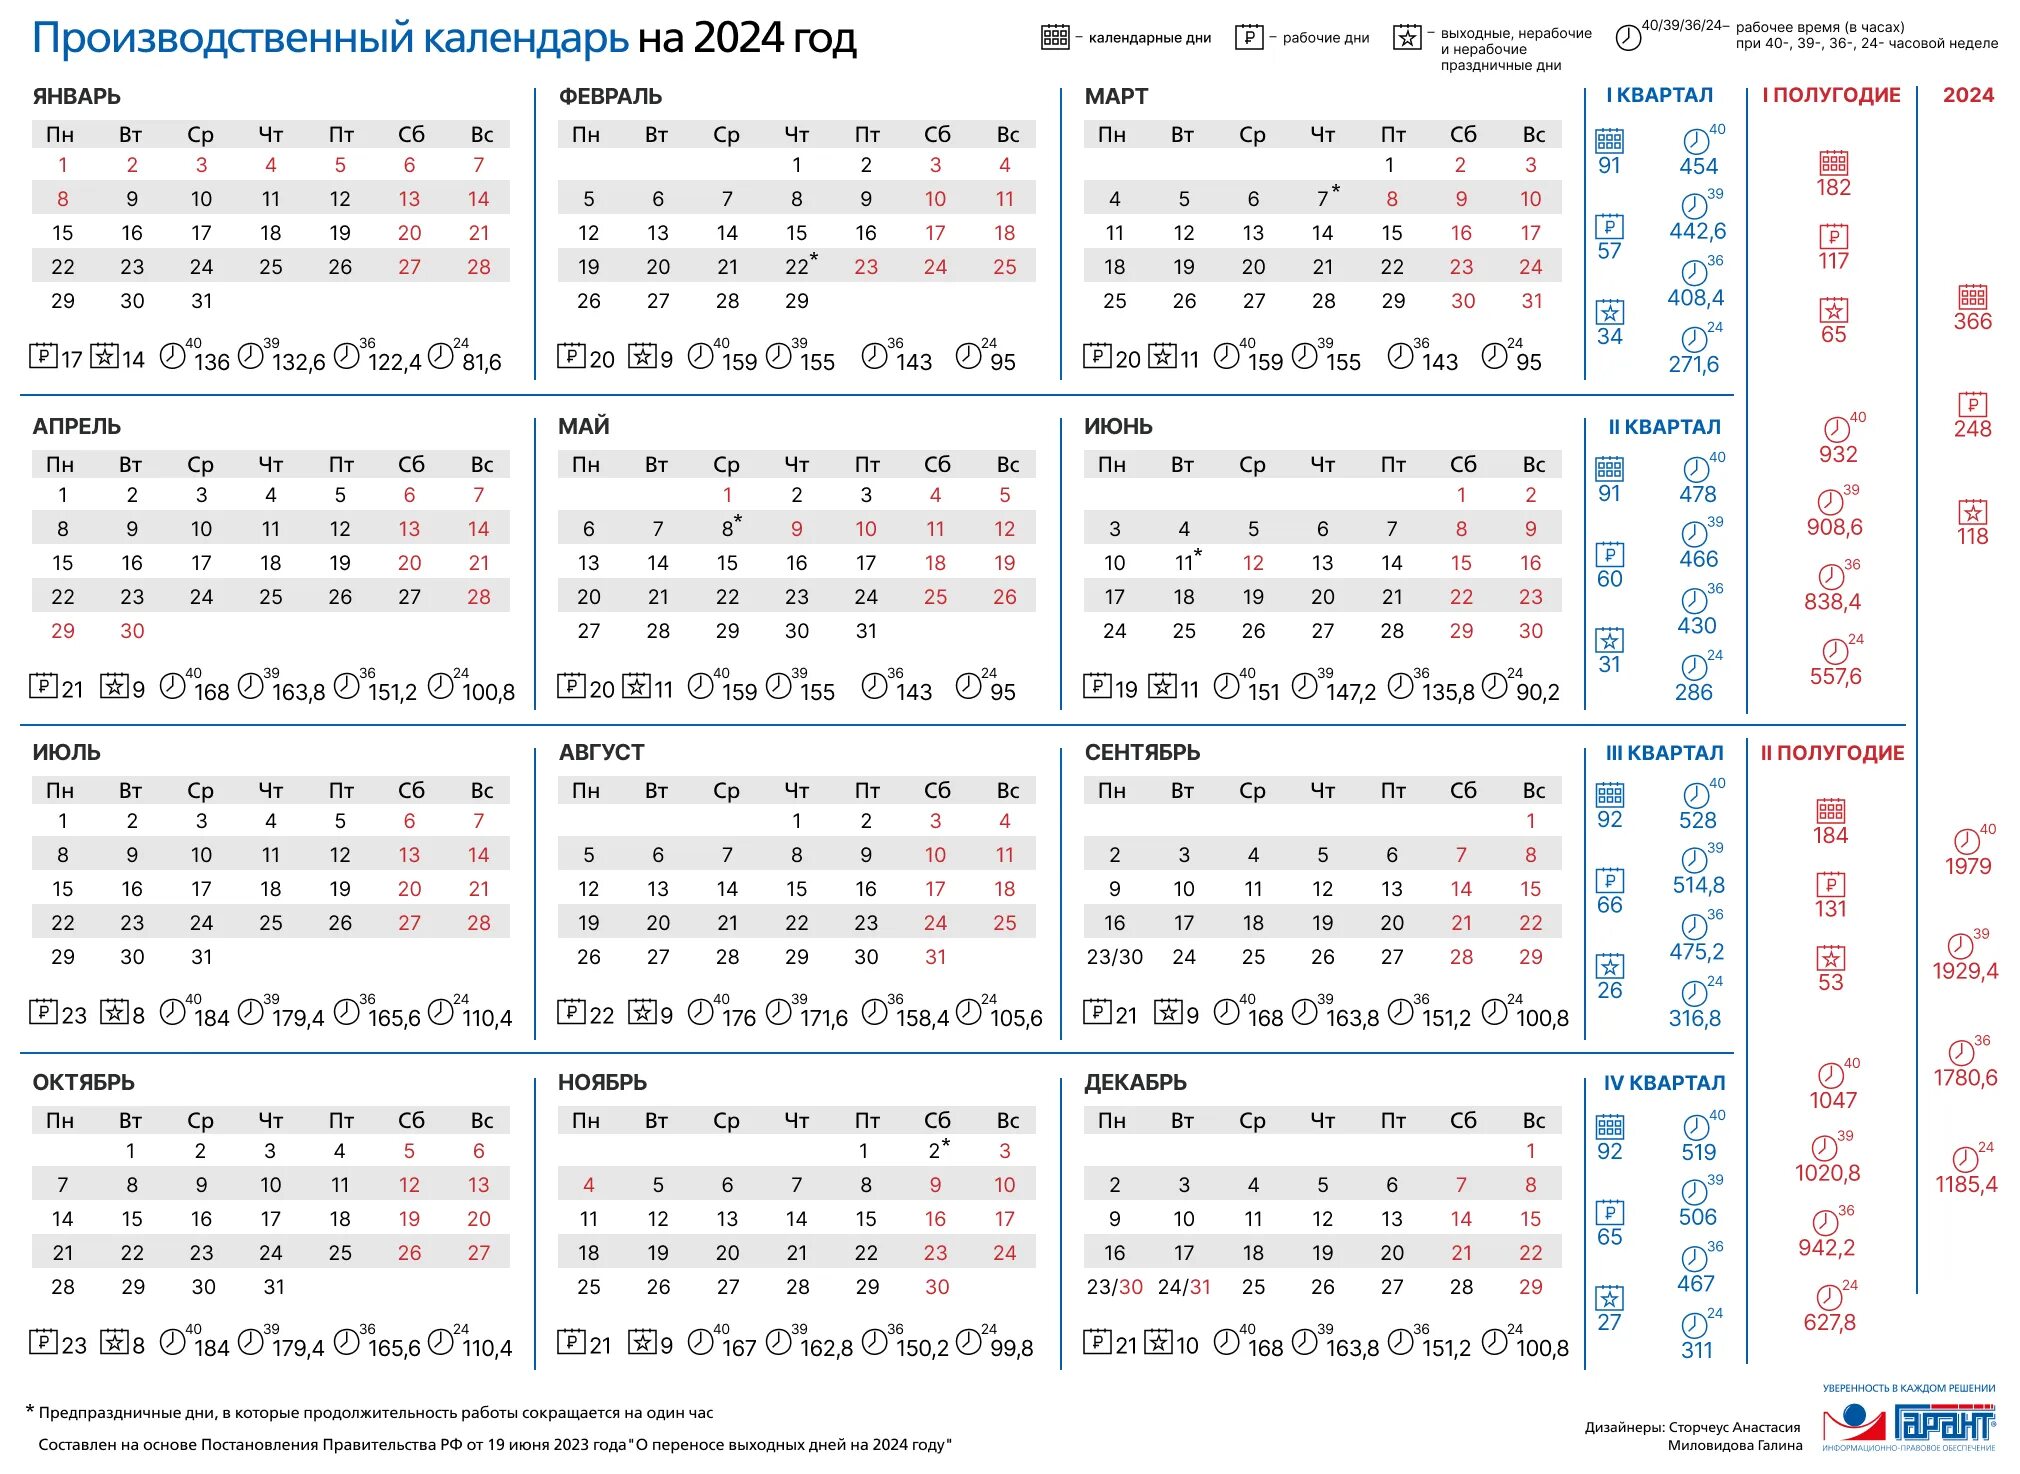 Производственный календарь на 2020 год утвержденный правительством. Производственный календарь на 2021 год для пятидневной рабочей недели. Календарь с нормами рабочего времени на 2021. Производственный календарь 2020 и 2021 год.